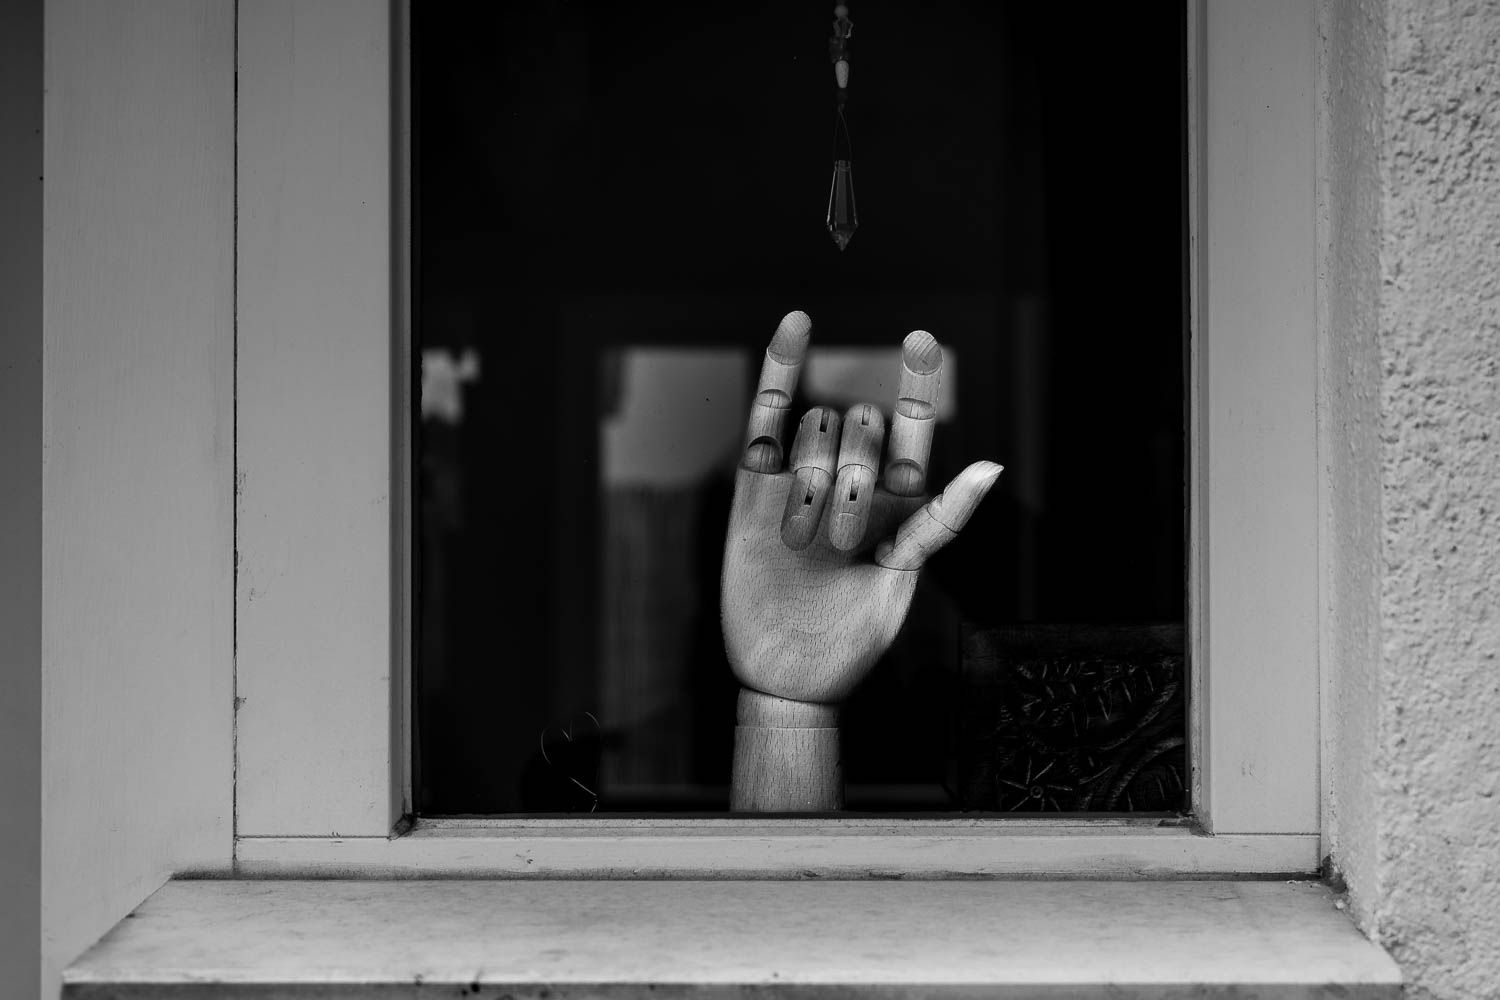 Eine hölzerne Hand mit beweglichen Fingergliedern steht in einem Fenster. Die Hand wurde so "konfiguriert", dass sie die "I love you" Geste zeigt. 🤟